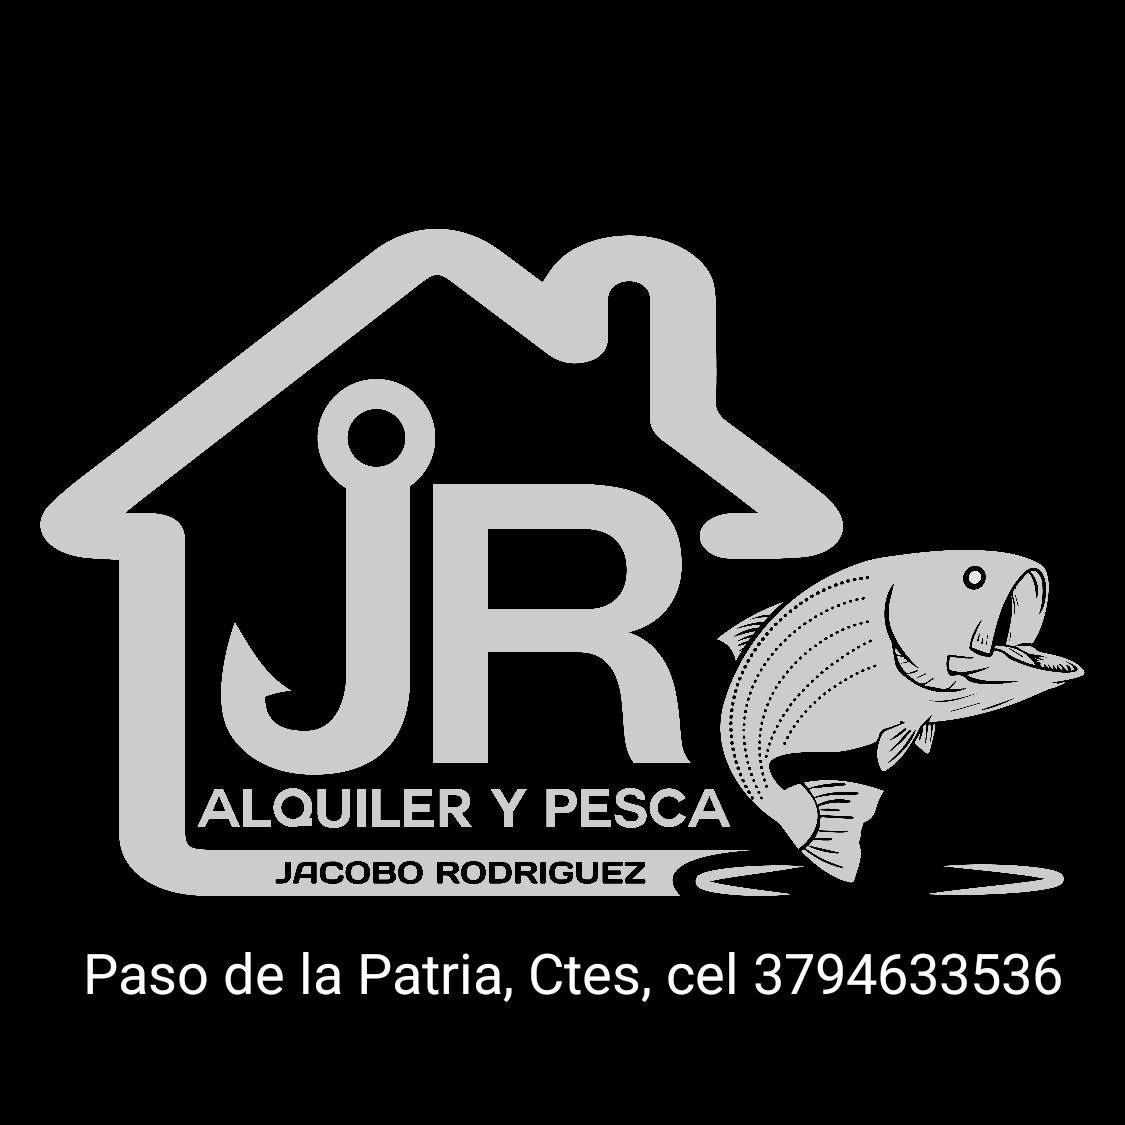 Jacobo Rodriguez | Alquileres y Pesca